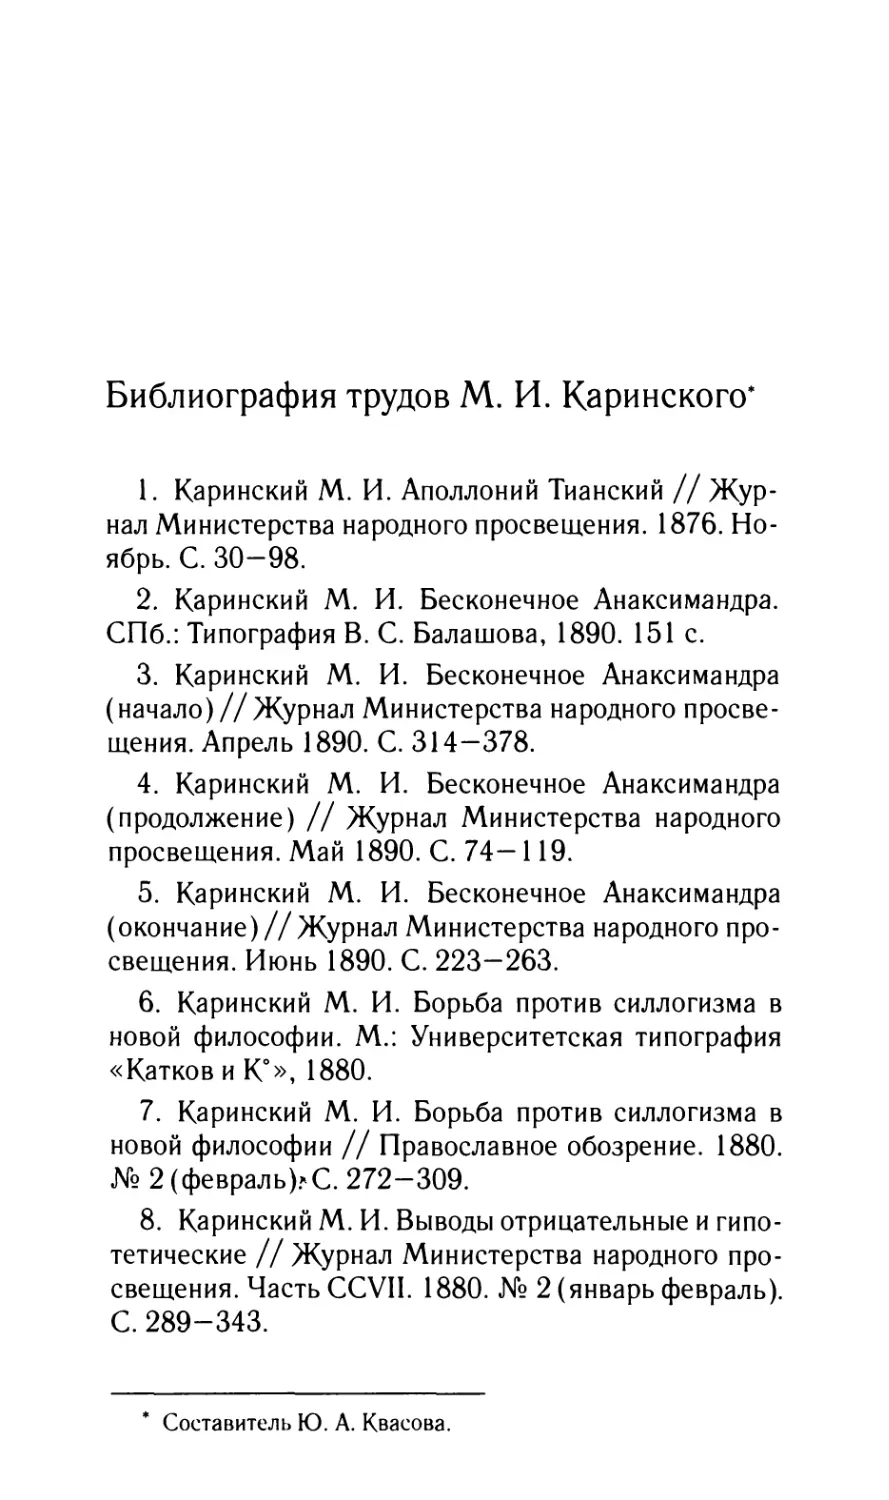 Библиография трудов М.И. Каринского